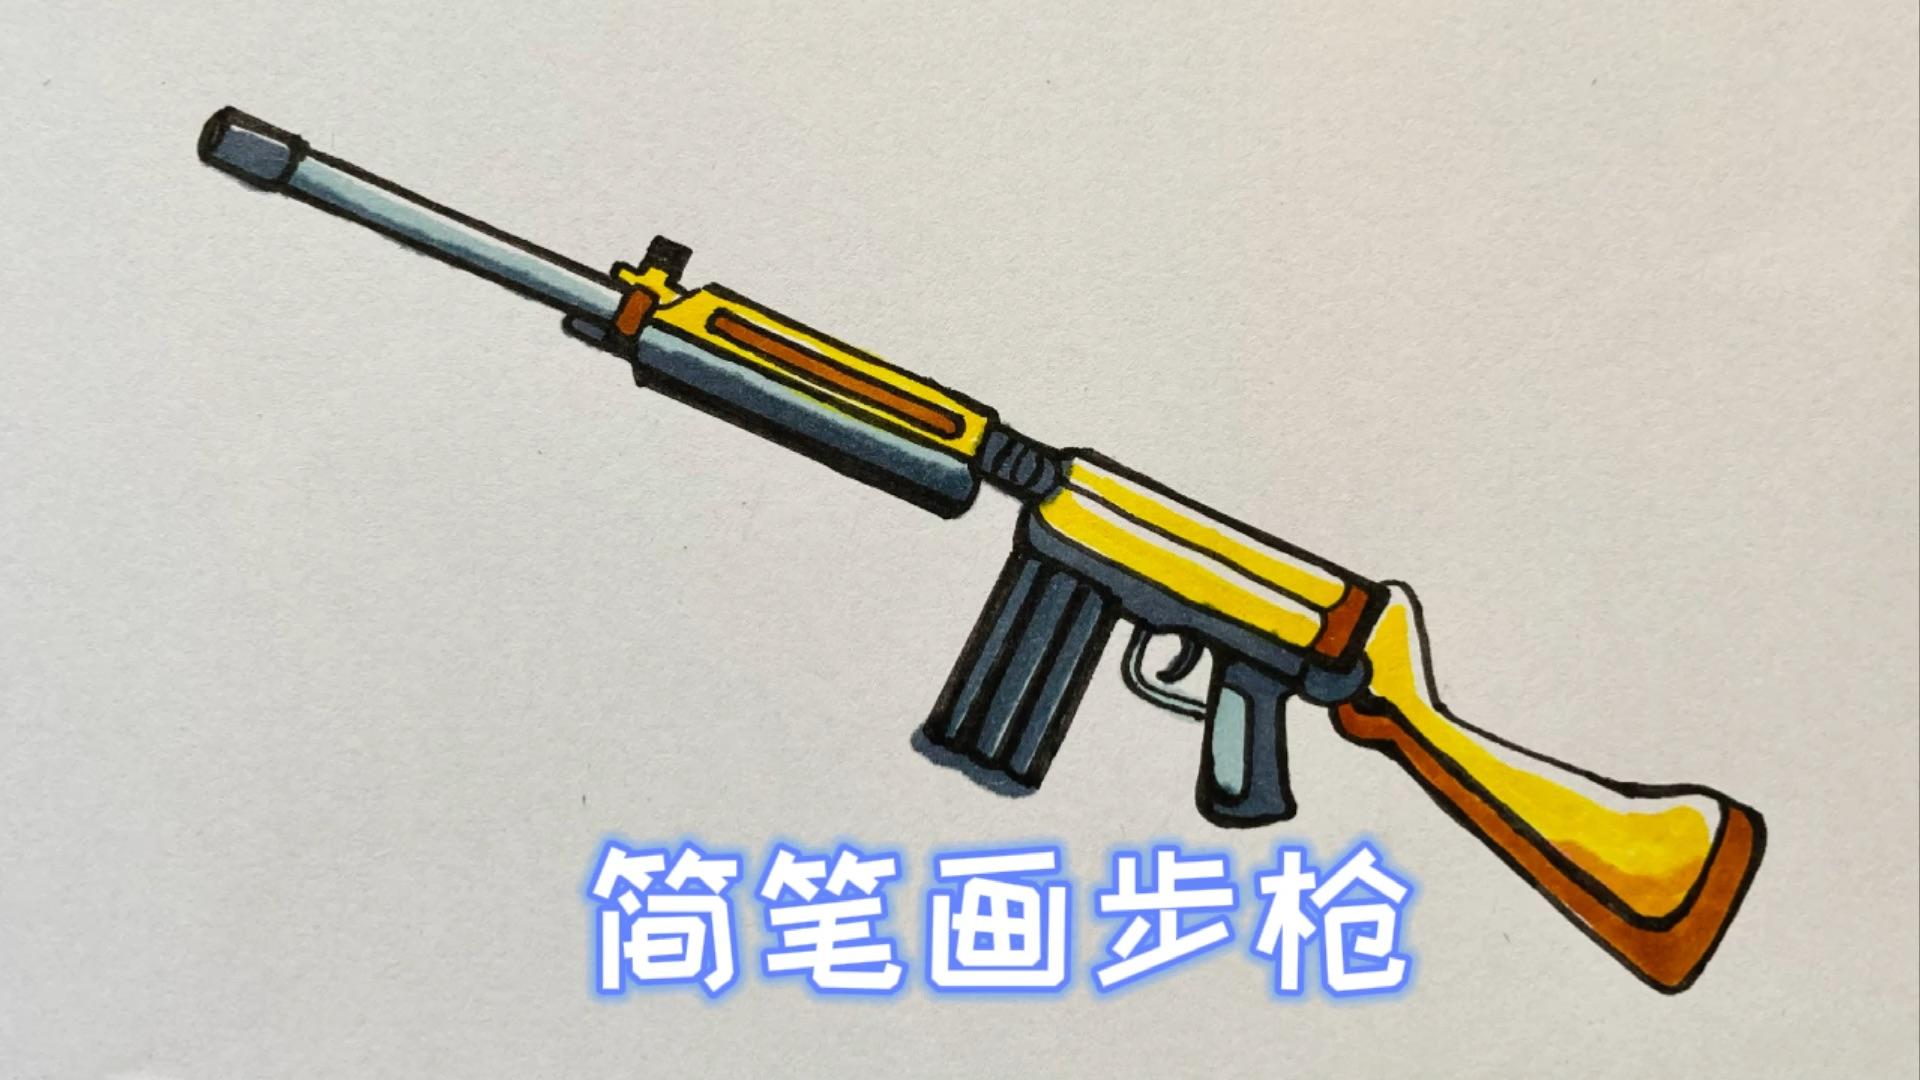 汉阳造步枪,打响辛亥革命第一枪,服役超过70年